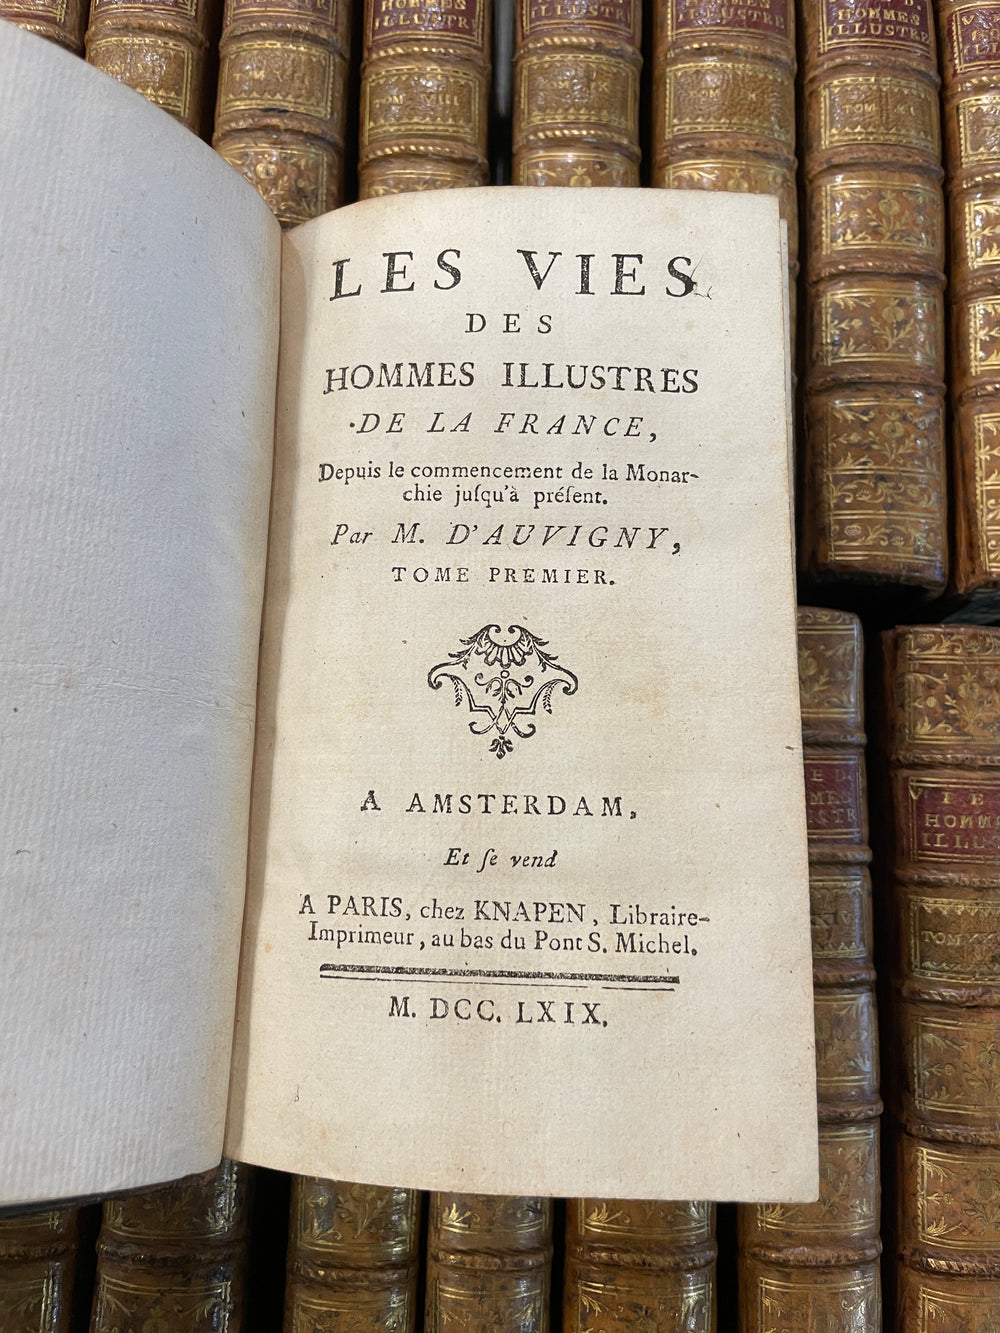 LES VIES DES HOMME ILLUSTRES DE LA FRANCE - D'AUVIGNY, PERAU & TURPIN 1739-1775